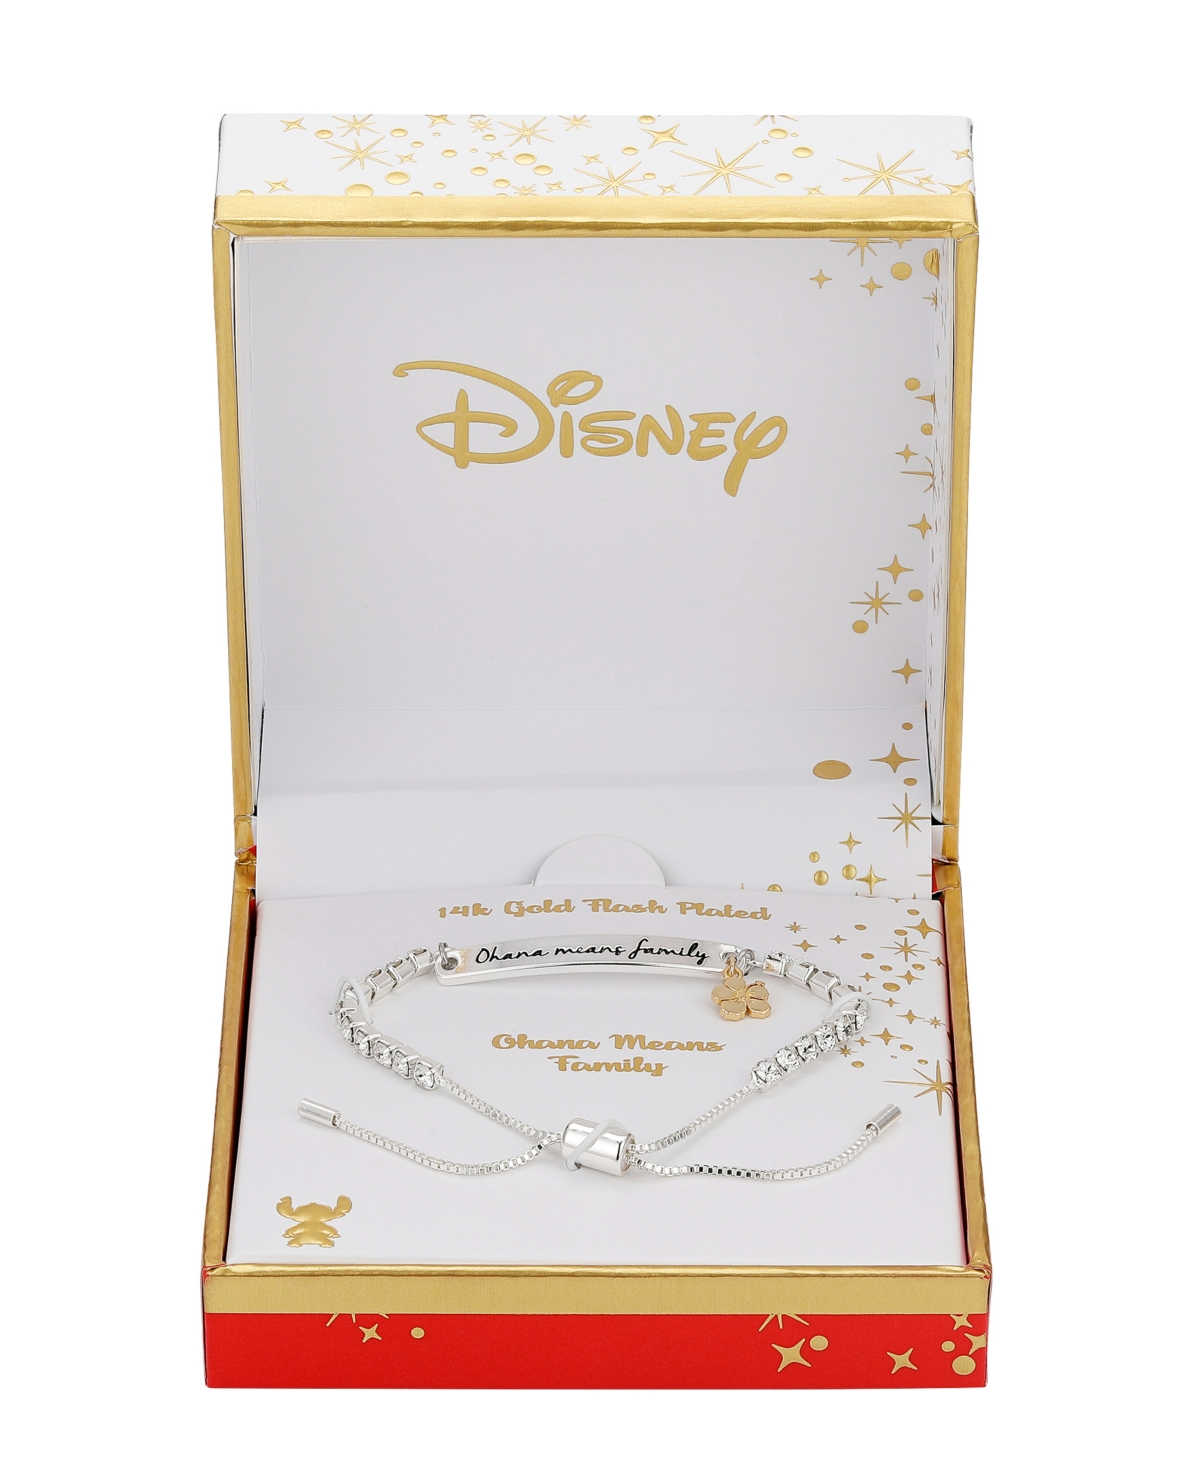 Disney's Lilo and Stitch Stitch Crystal Station Bracelet